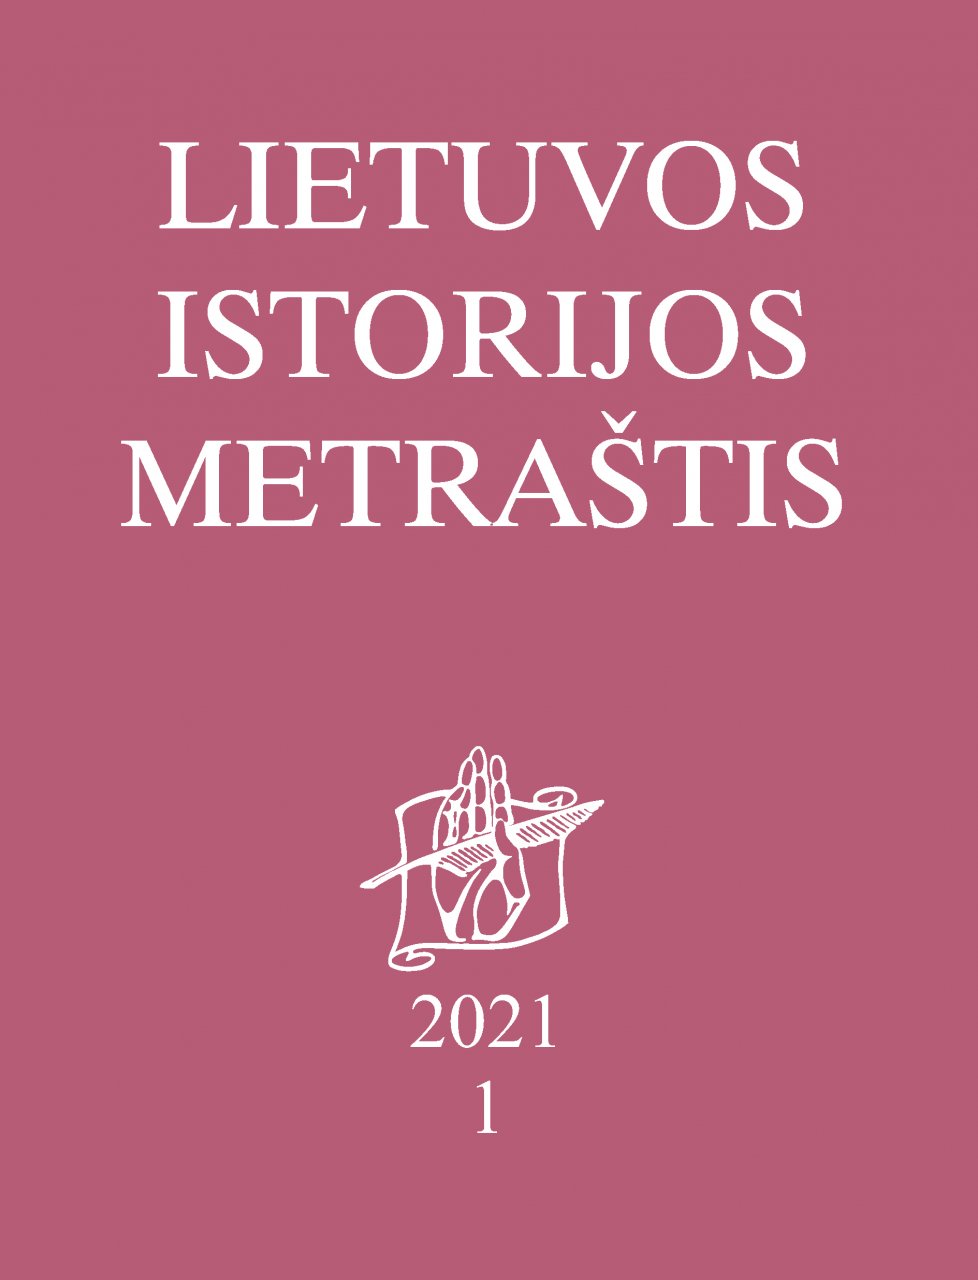 Lietuvos istorijos metraštis 2021 metai 1